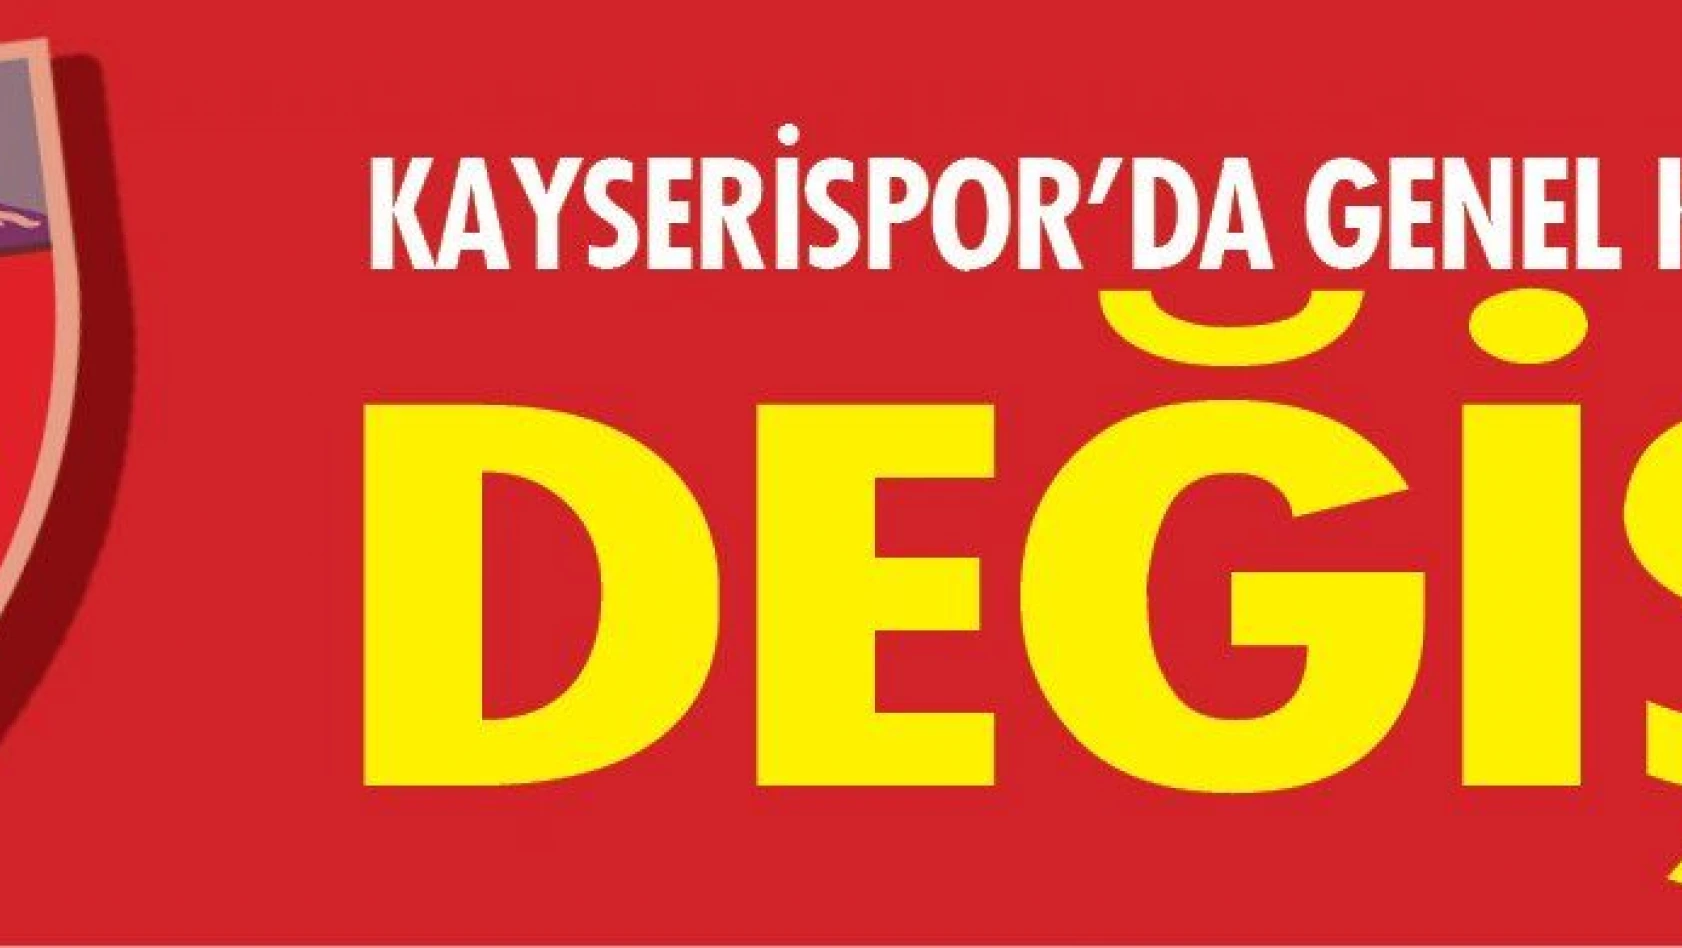 Kayserispor'da genel kurul tarihi değişti